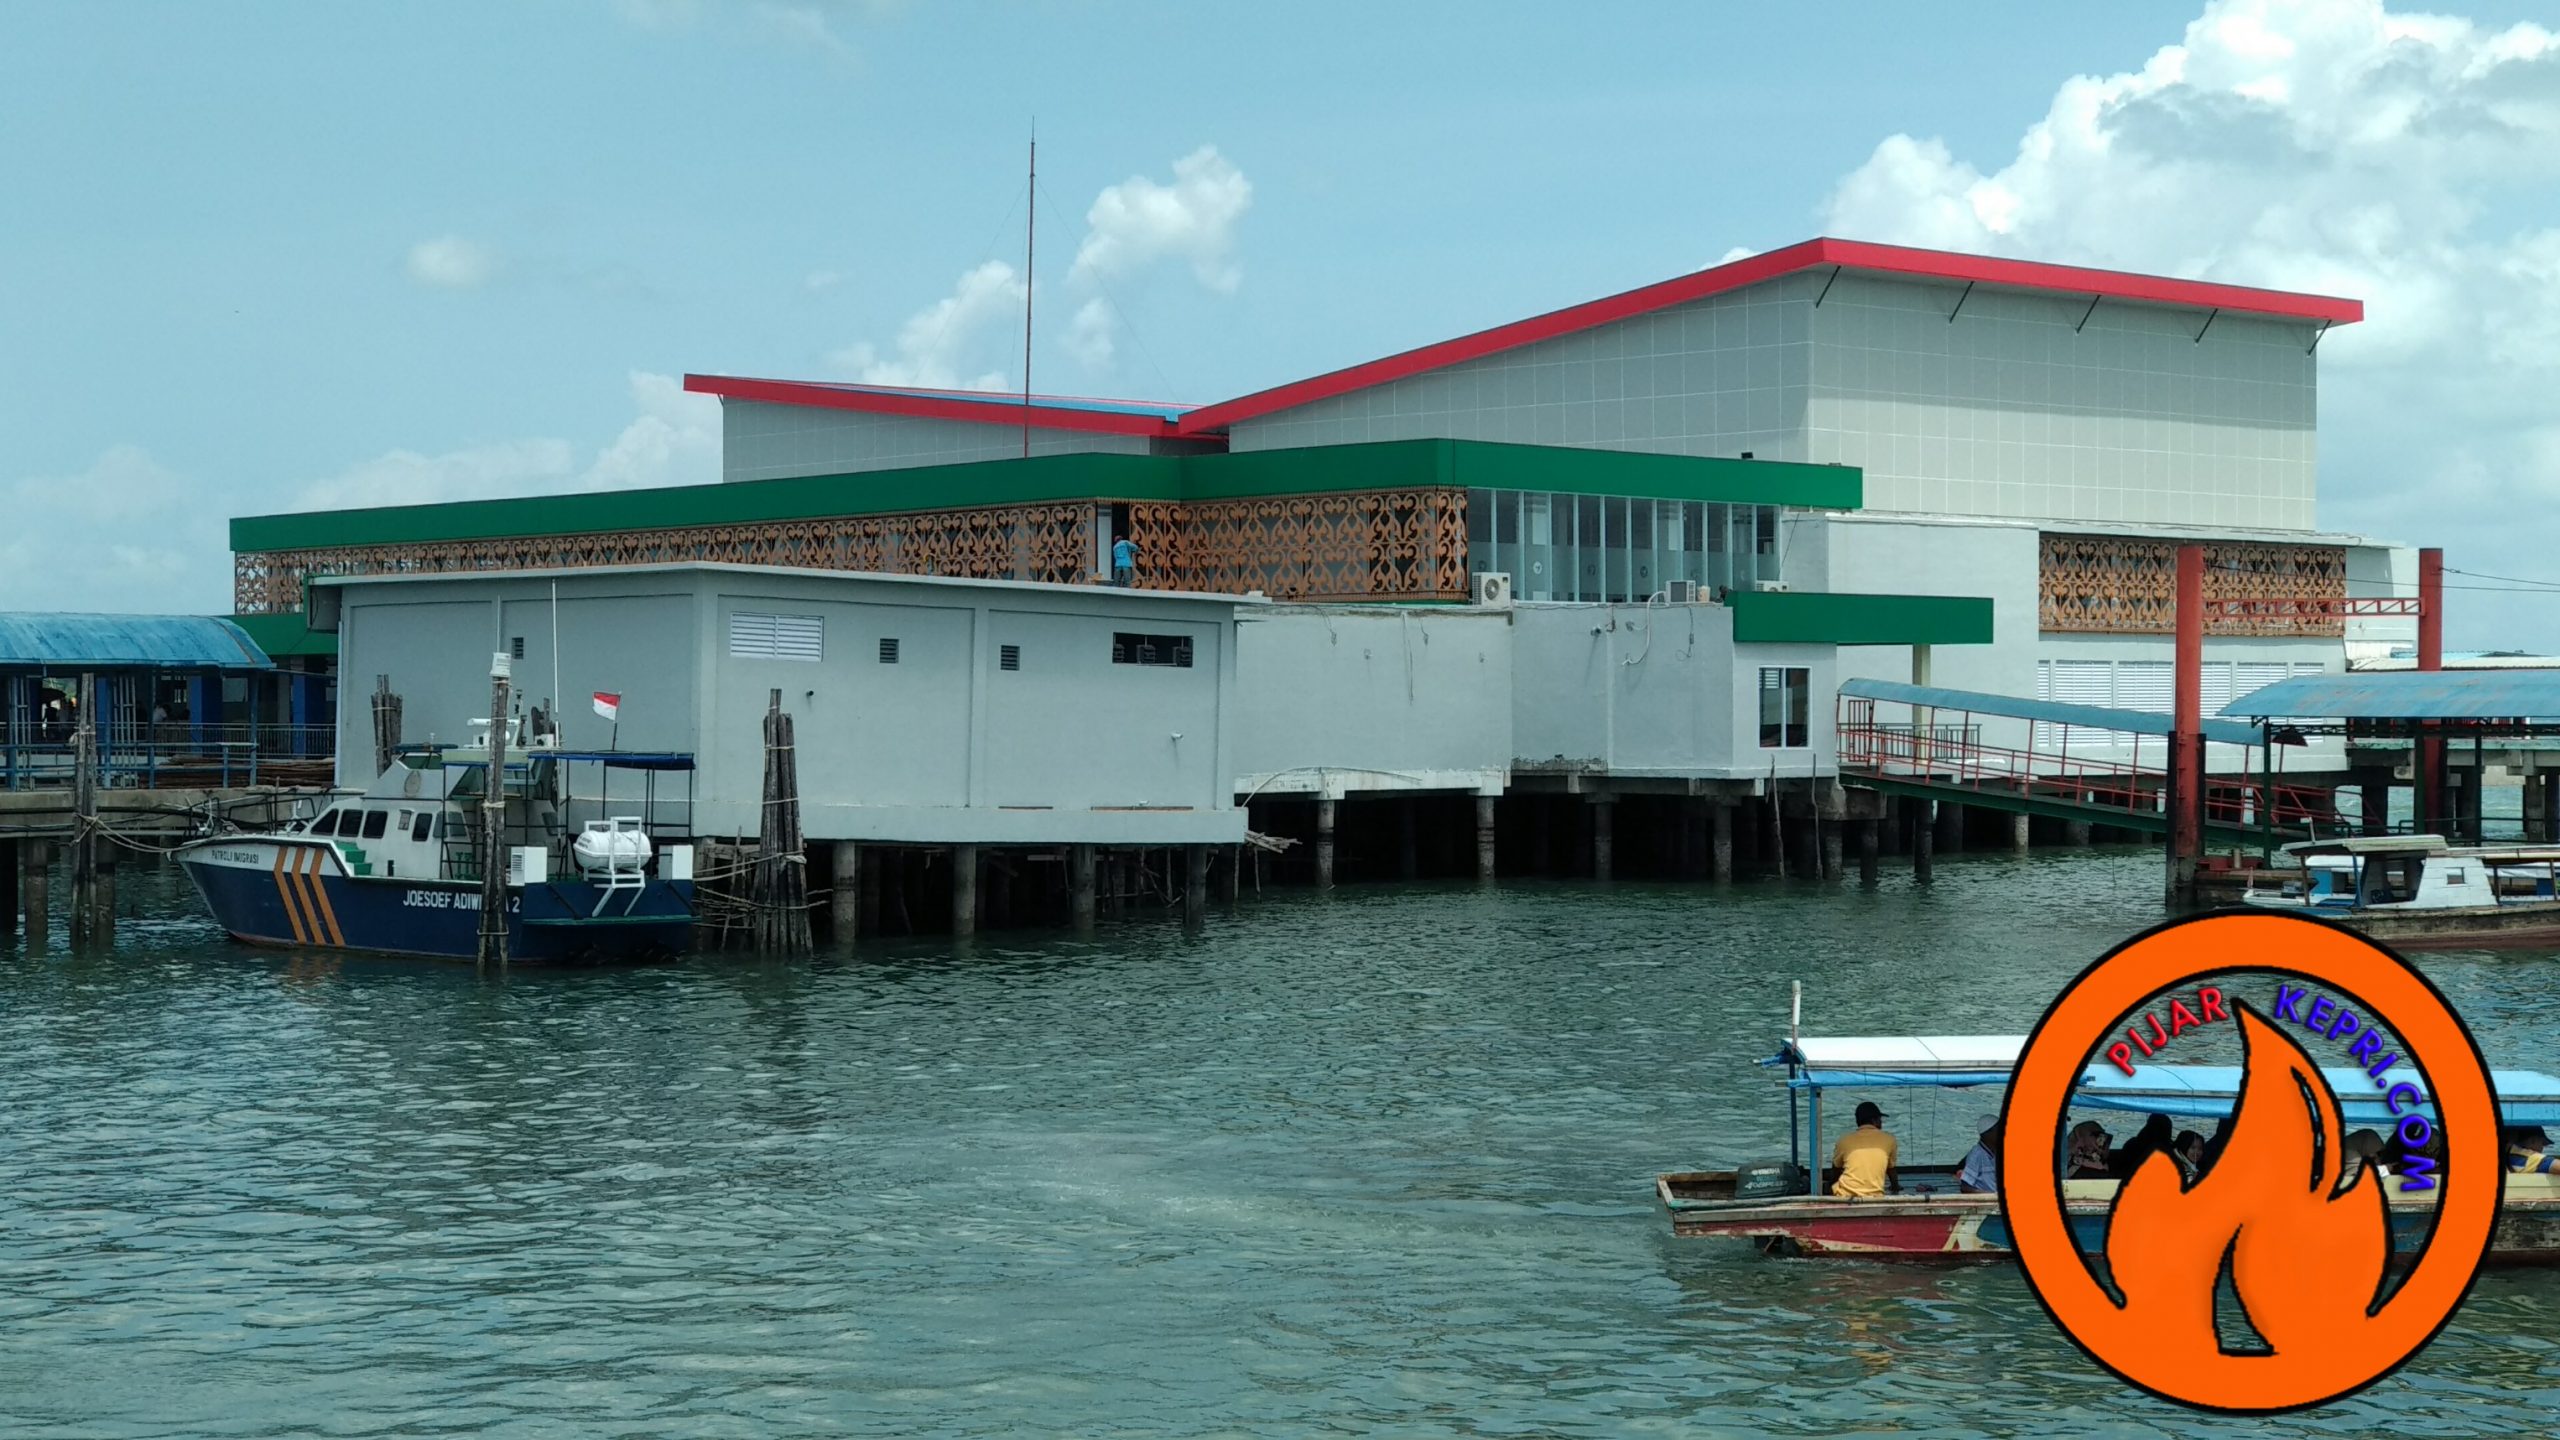 Bangunan penampung air di Pelabuhan SBP Tanjungpinang yang miring setelah selesai pengerjaannya. (Foto: aji anugraha)